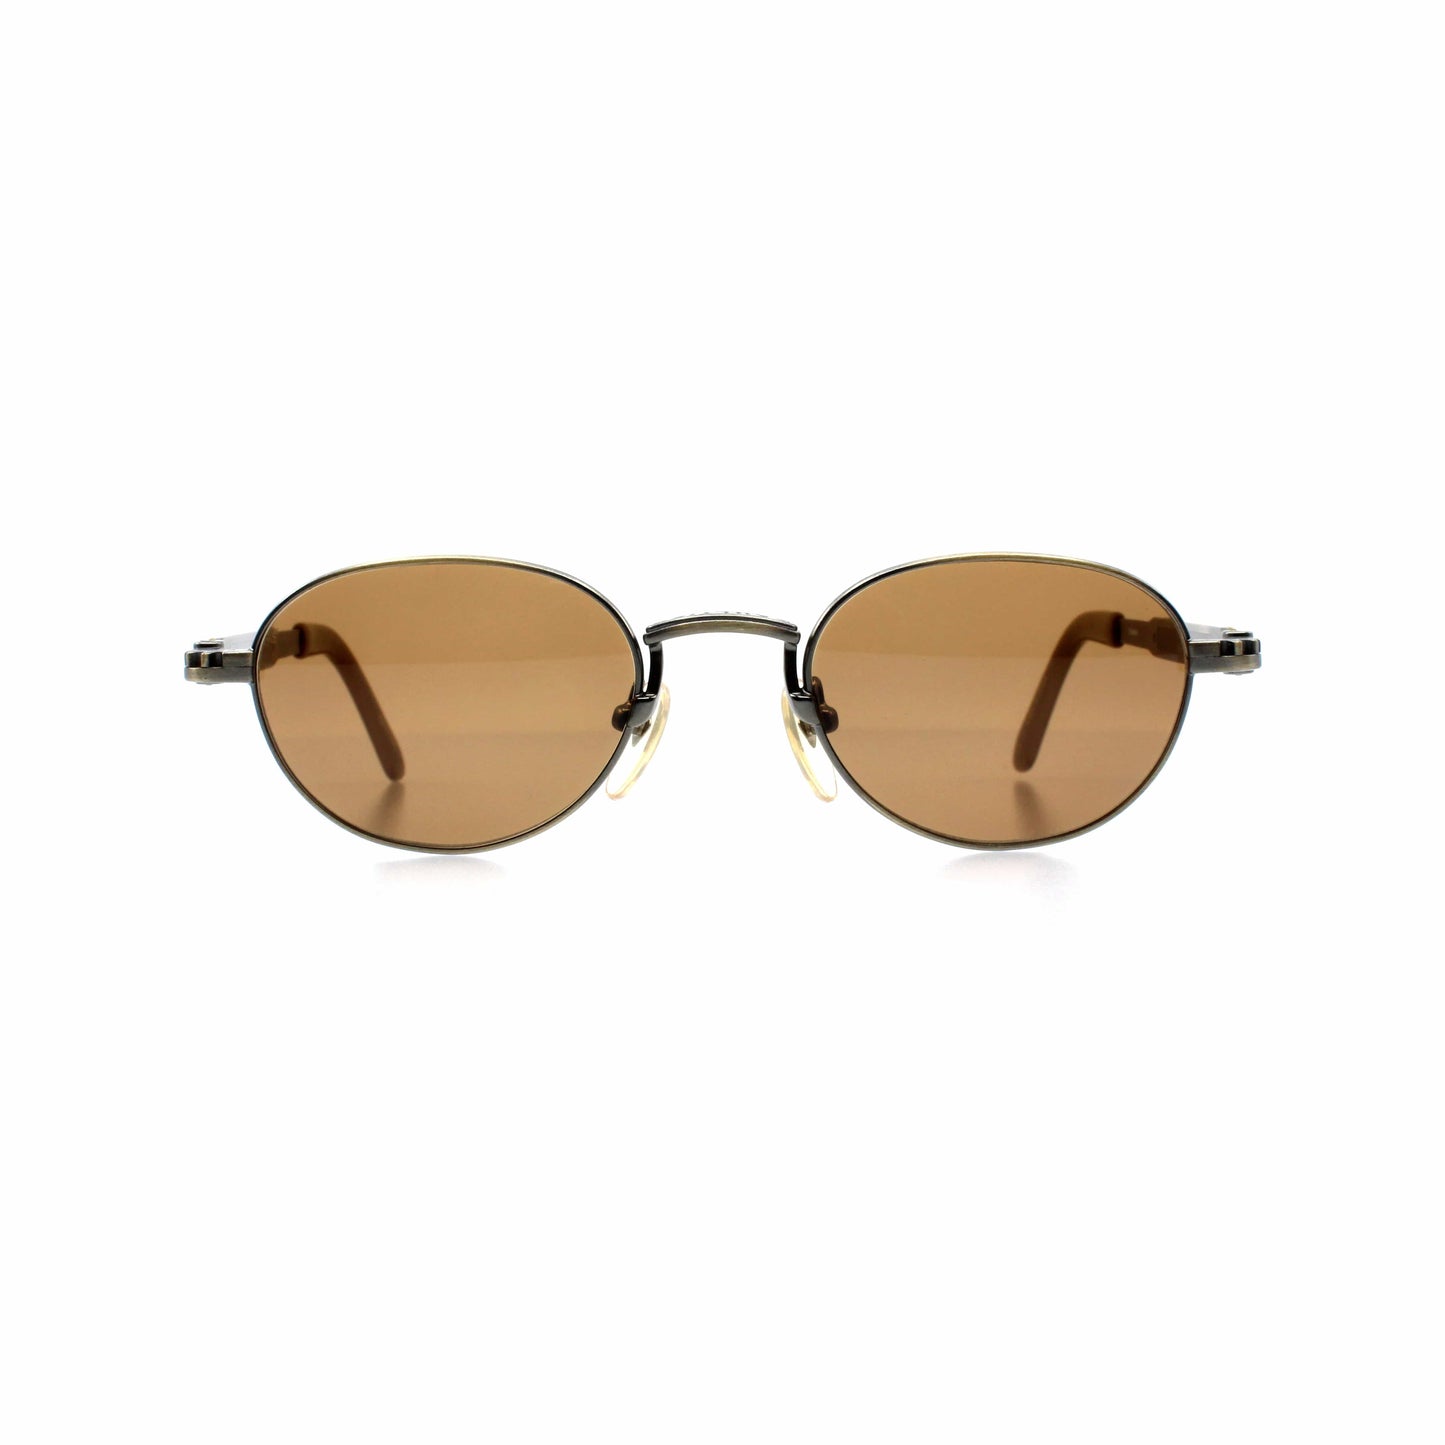 Copper Vintage Jean Paul Gaultier 56-8104 Sunglasses RSTKD Vintage